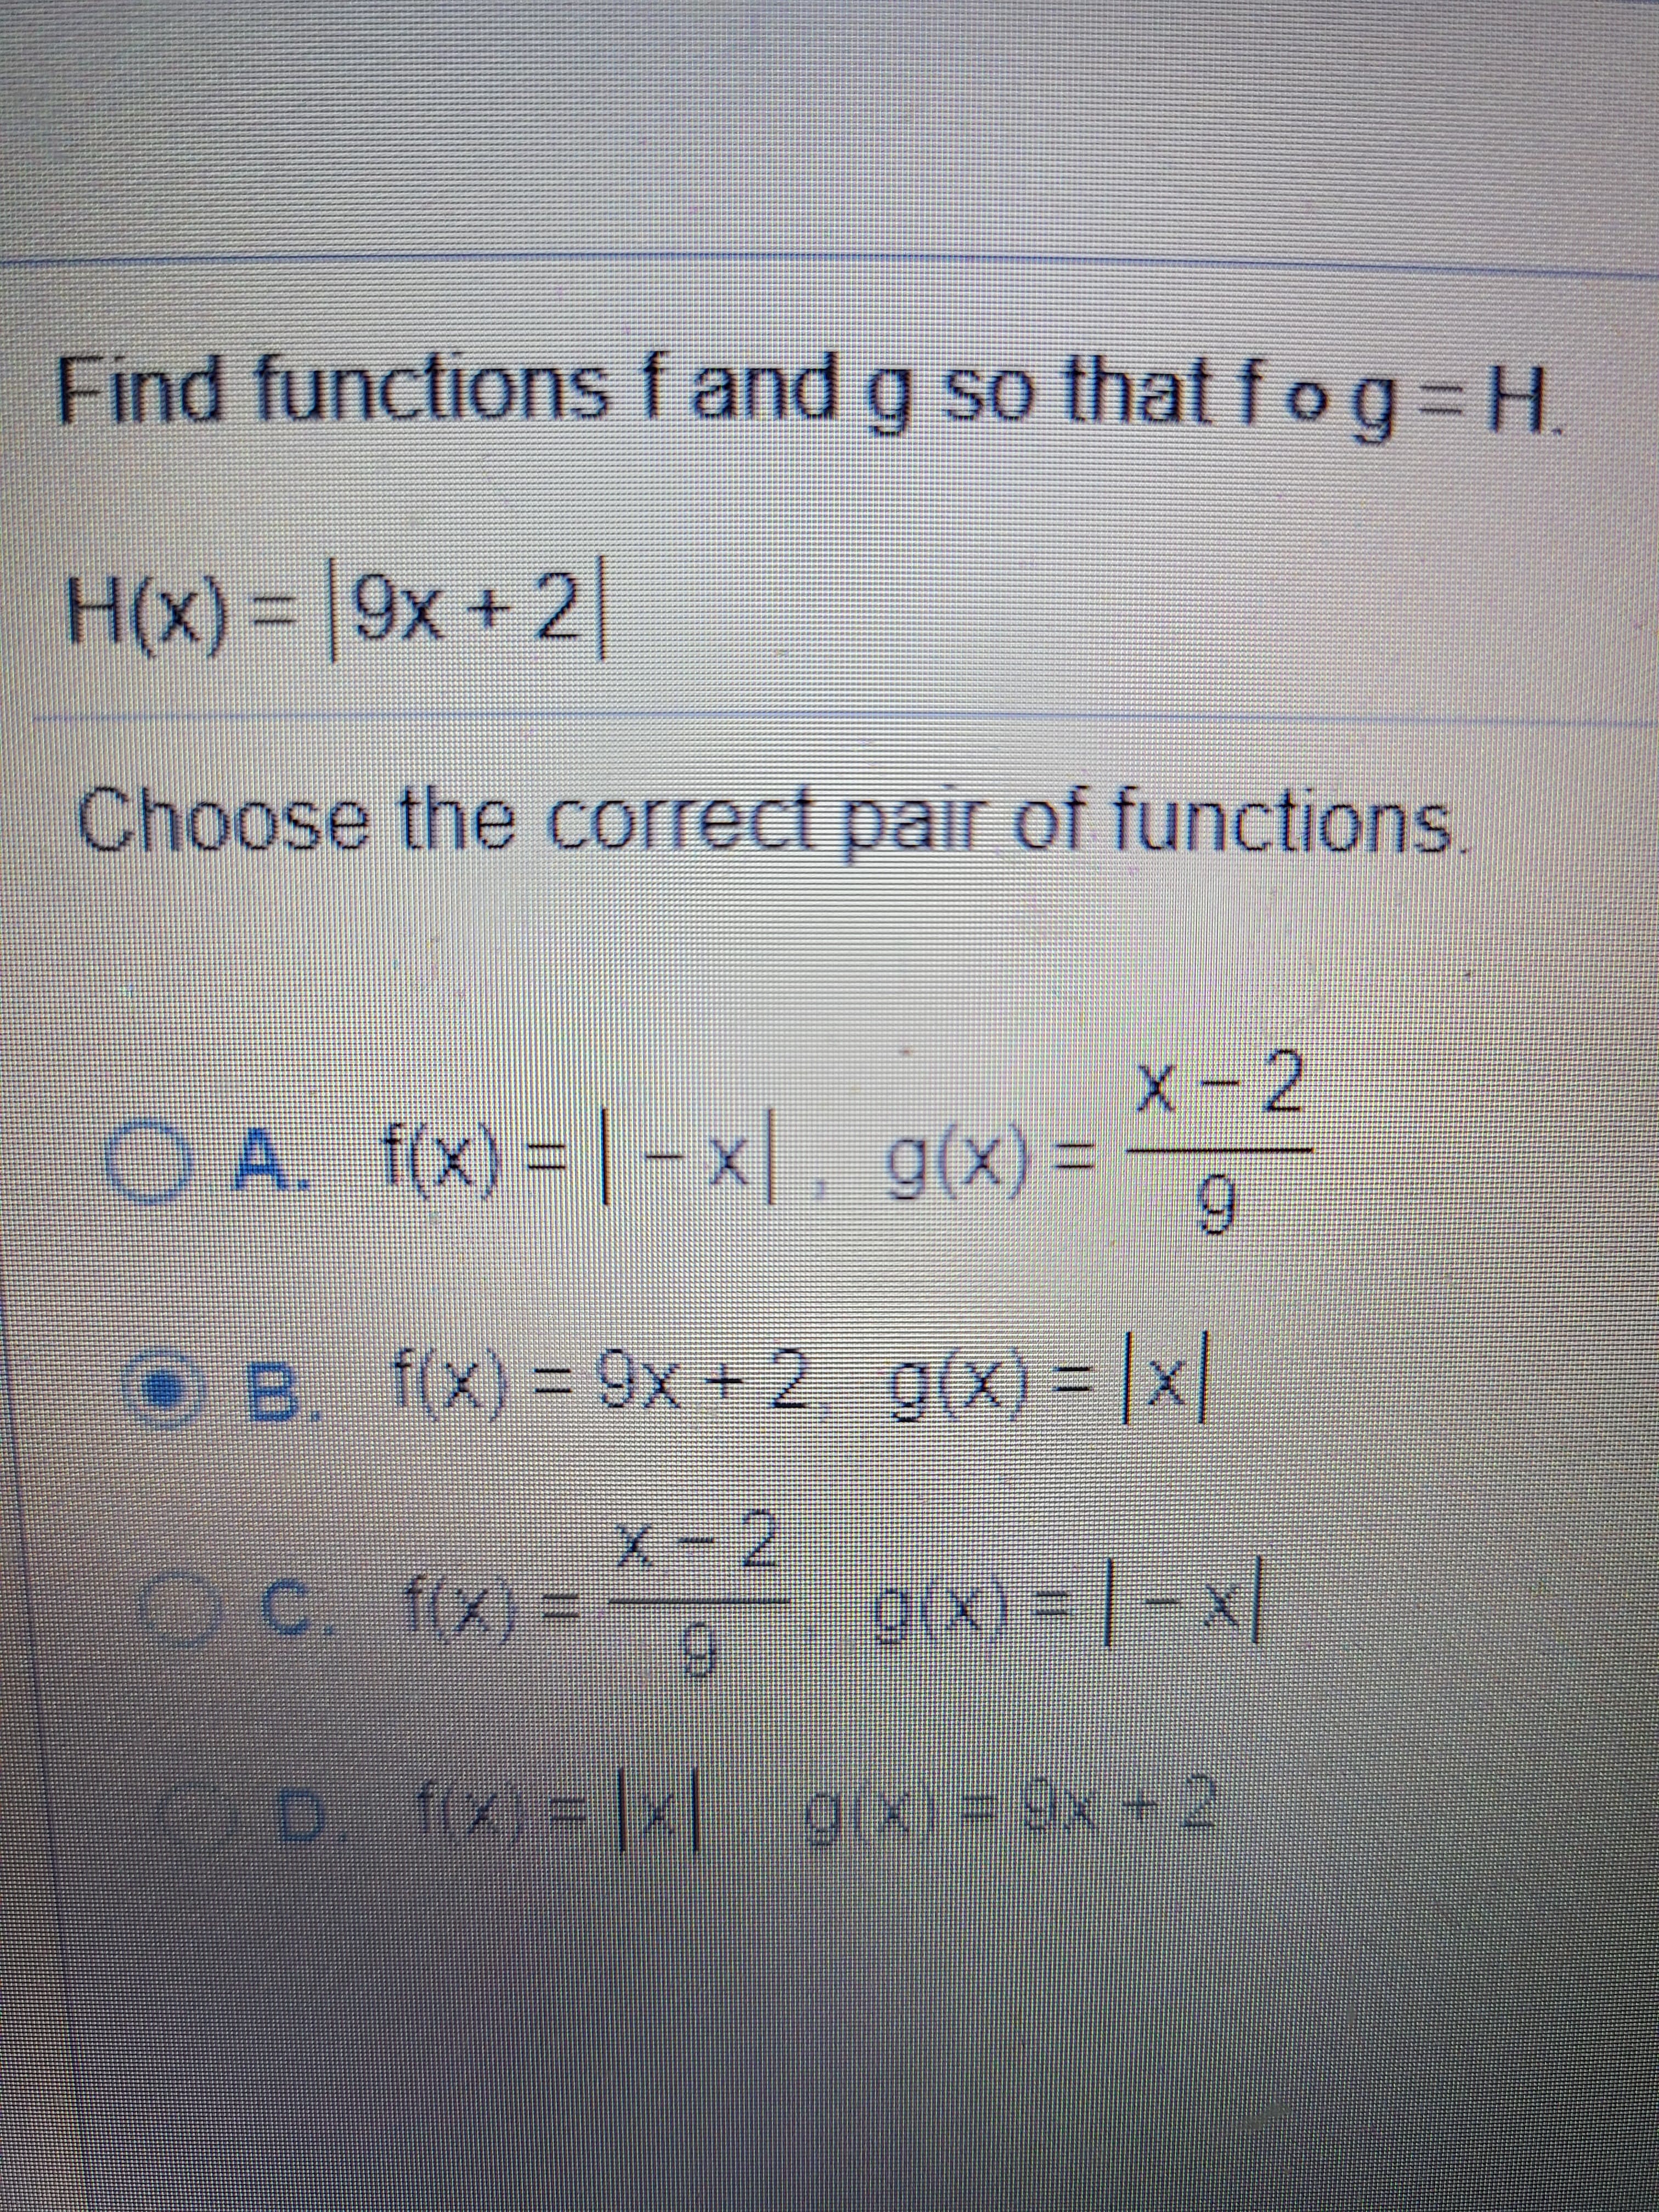 Find functions f and g so that f og=H
.
%3D
H(x) = |9x + 2
%3D
